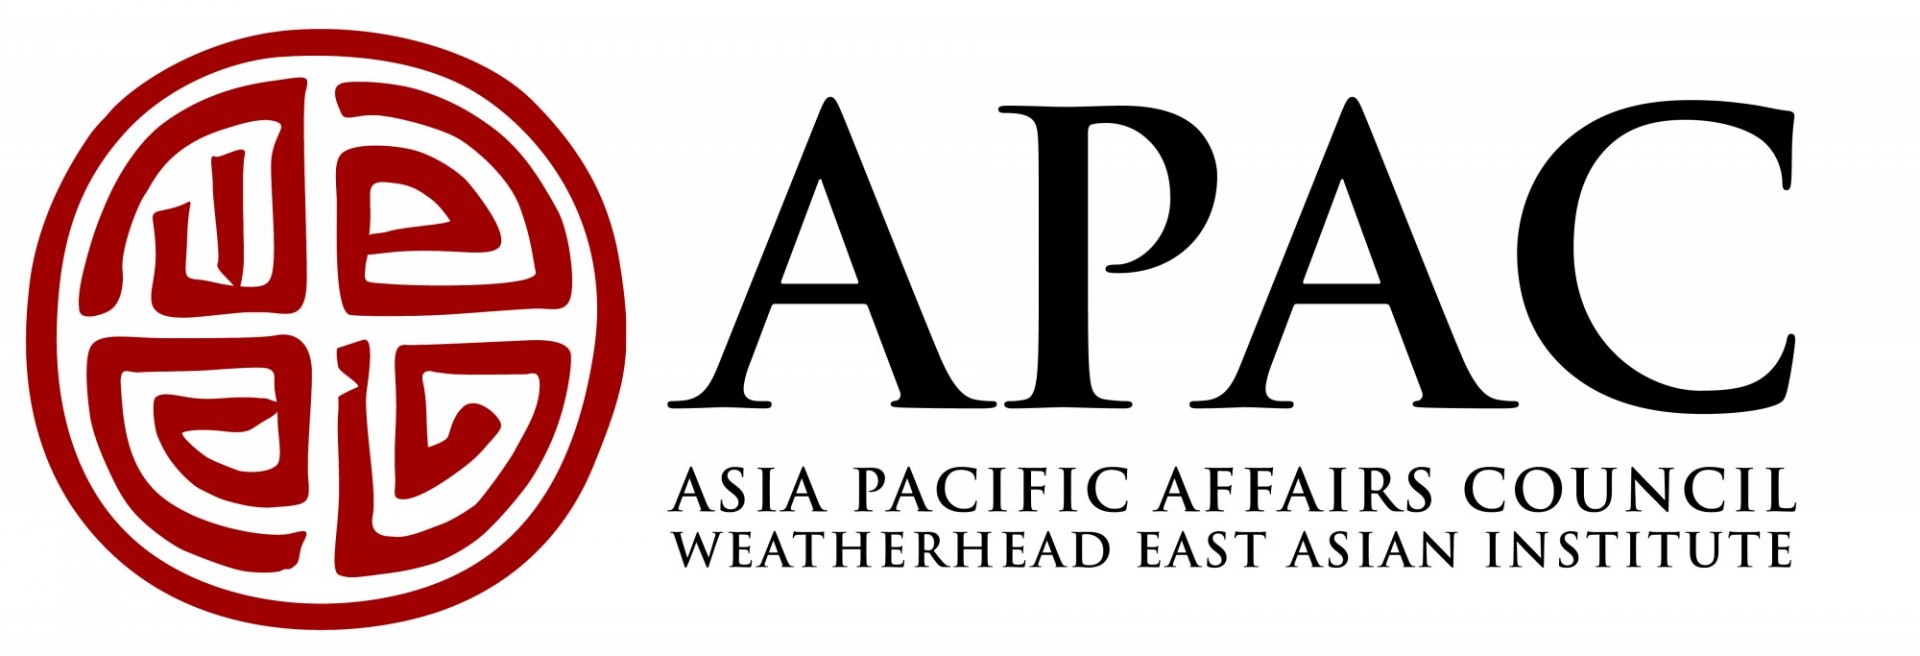 Asia Pacific Affairs Council (APAC)